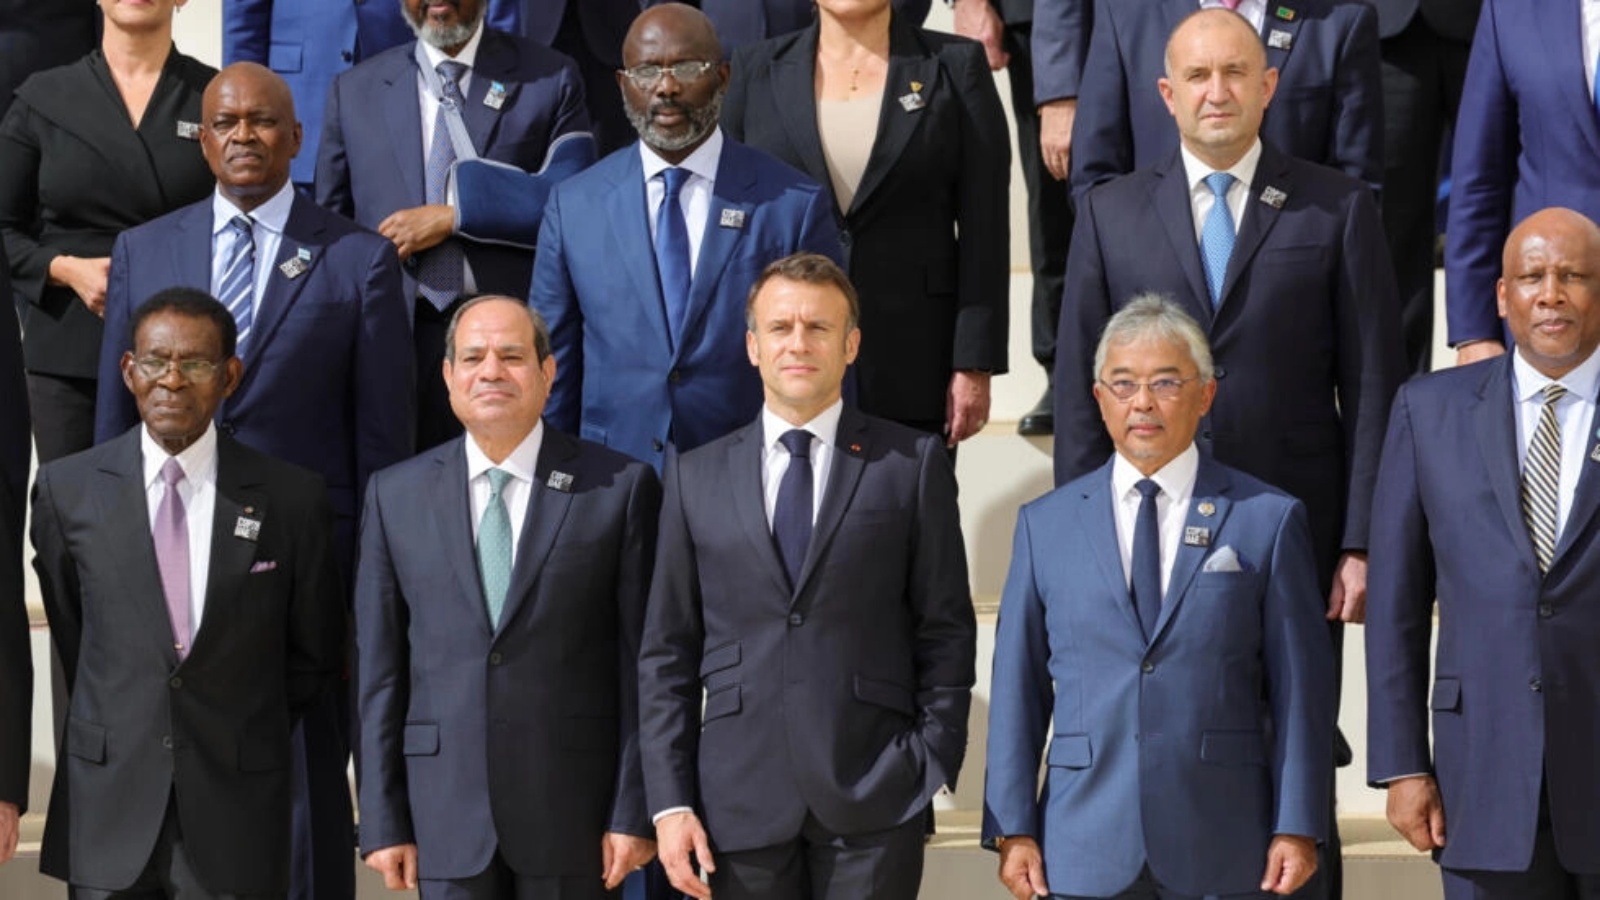 الرئيس الفرنسي إمانويل ماكرون والرئيس المصري عبدالفتاح السيسي من بين عدد من القادة أثناء التقاط صورة جماعية خلال مؤتمر كوب28 في دبي في 1 ديسمبر 2023